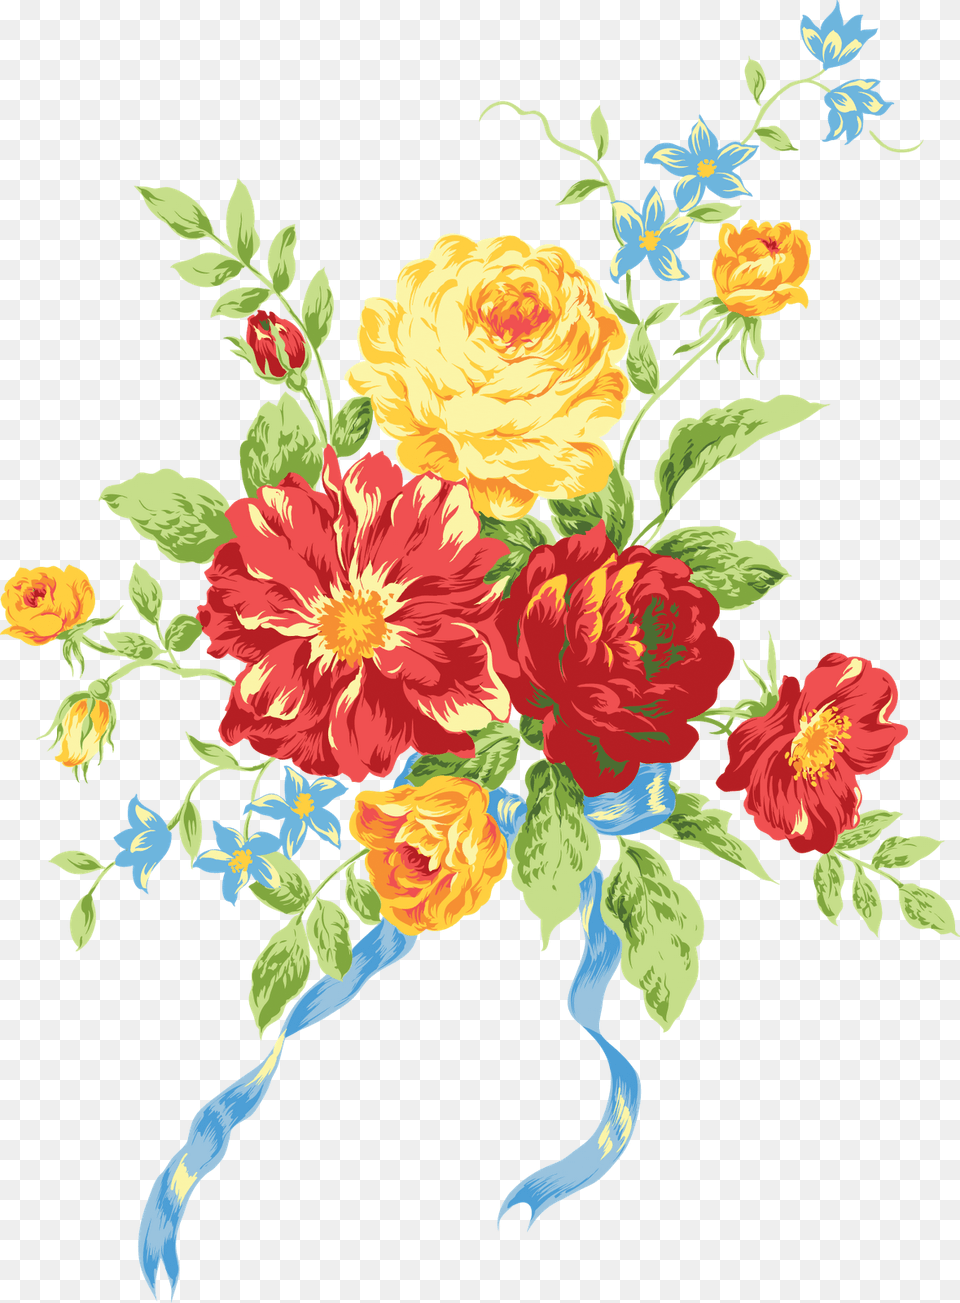 Bouquet Vector Vintage Realistic Flowers Clip Art, Floral Design, Pattern, Graphics, Plant Free Png